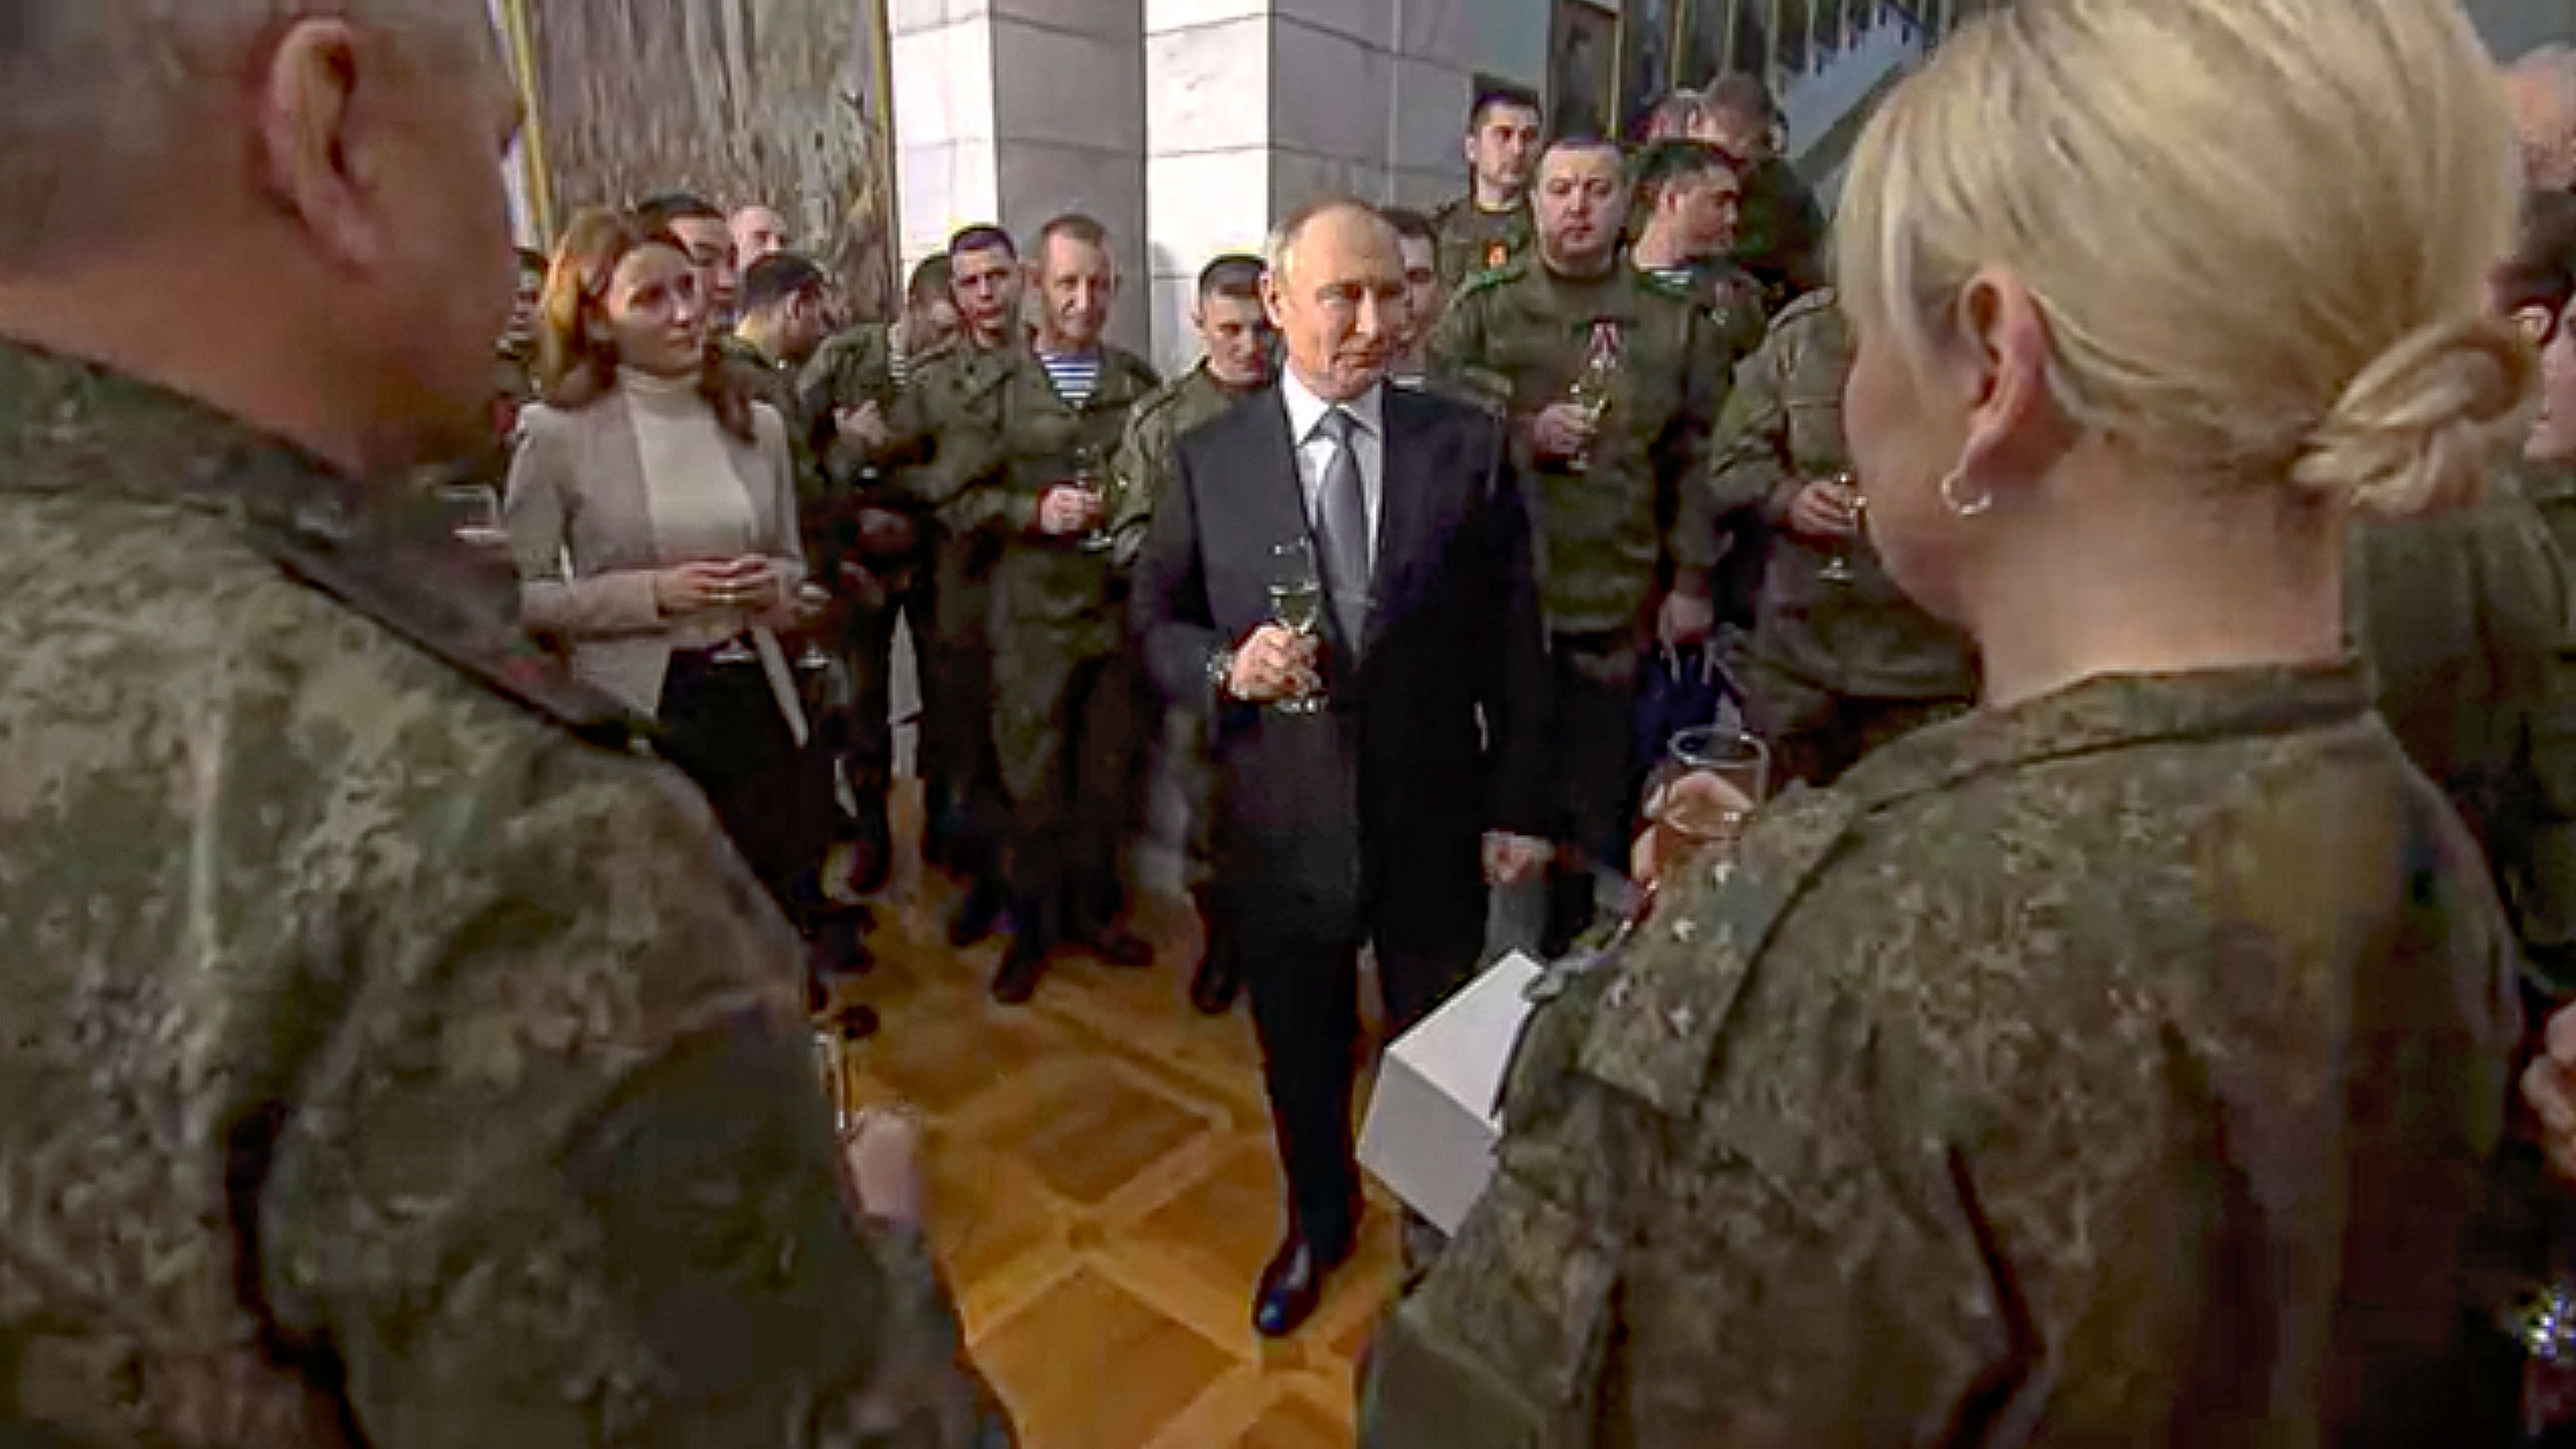 Putin spricht zu Soldat:innen an einem unbekannten Ort. Freiwillige aus den ehemaligen Sowjet-Staaten sollen sich der Ukraine angeschlossen haben.